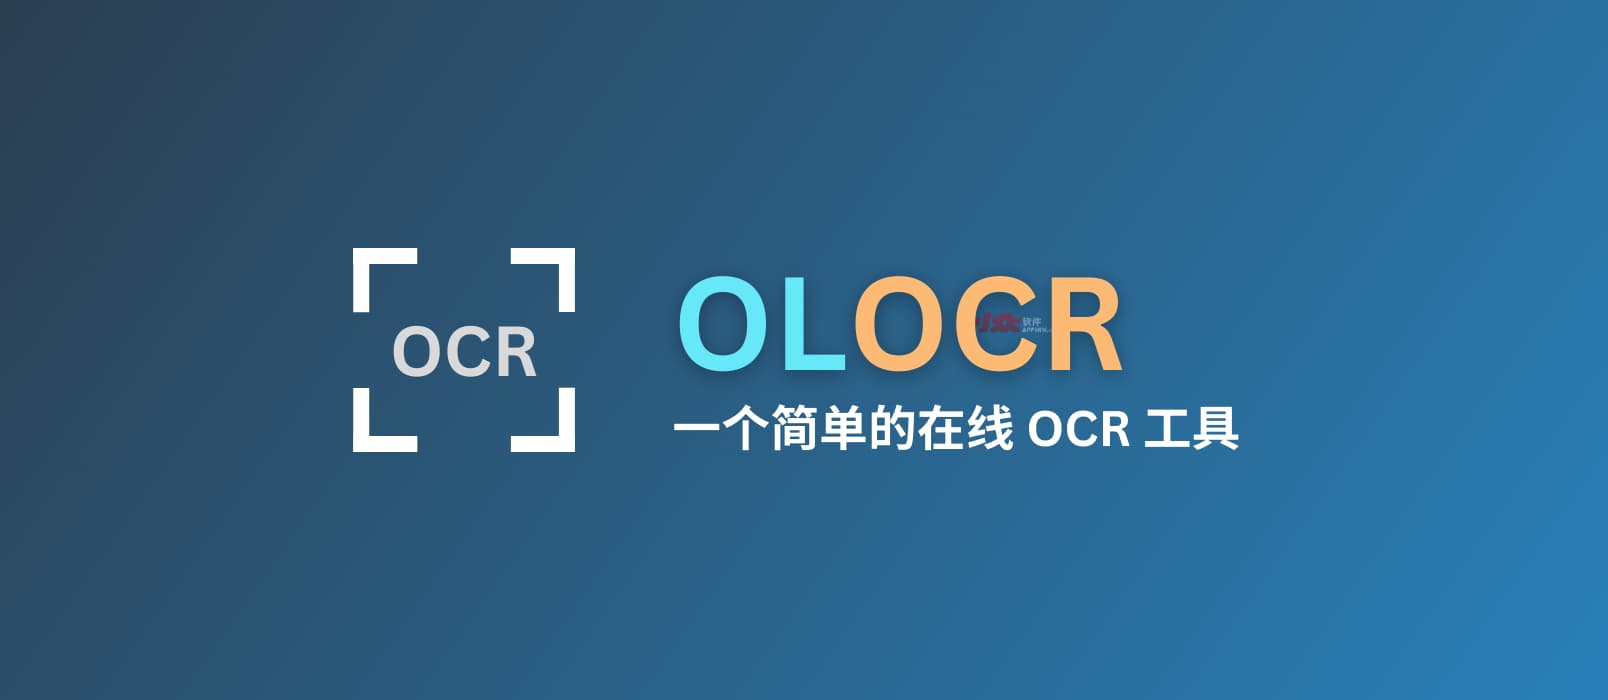 OLOCR - 一个简单易用的在线 OCR 文字识别工具，支持图片、PDF